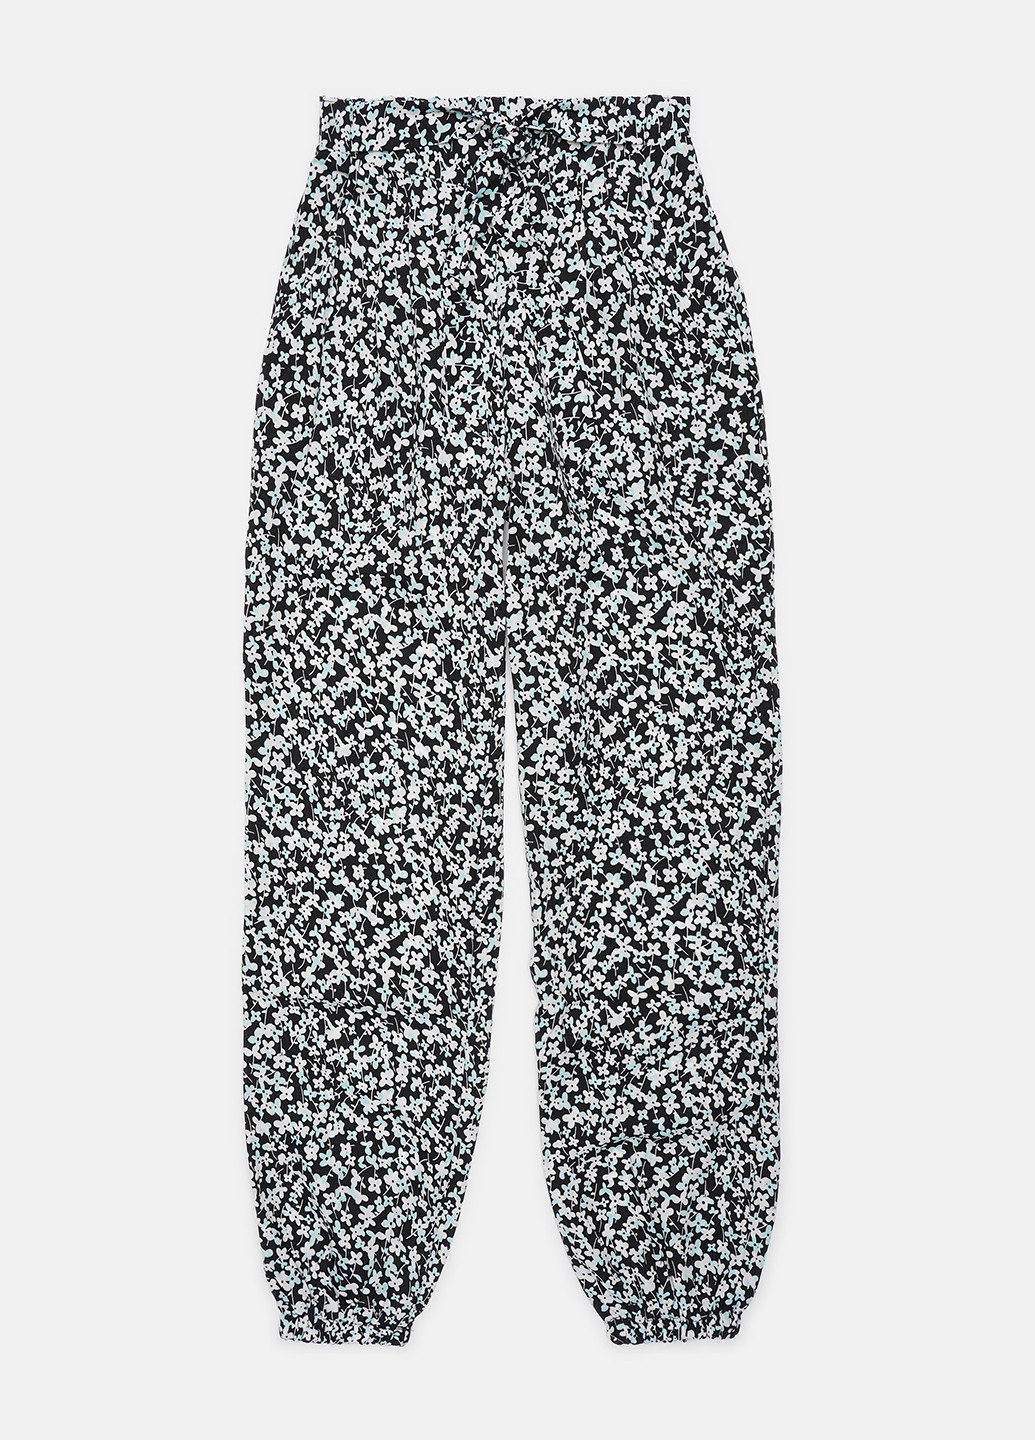 Черно-белые кэжуал демисезонные джоггеры, укороченные брюки Lulu Castagnette